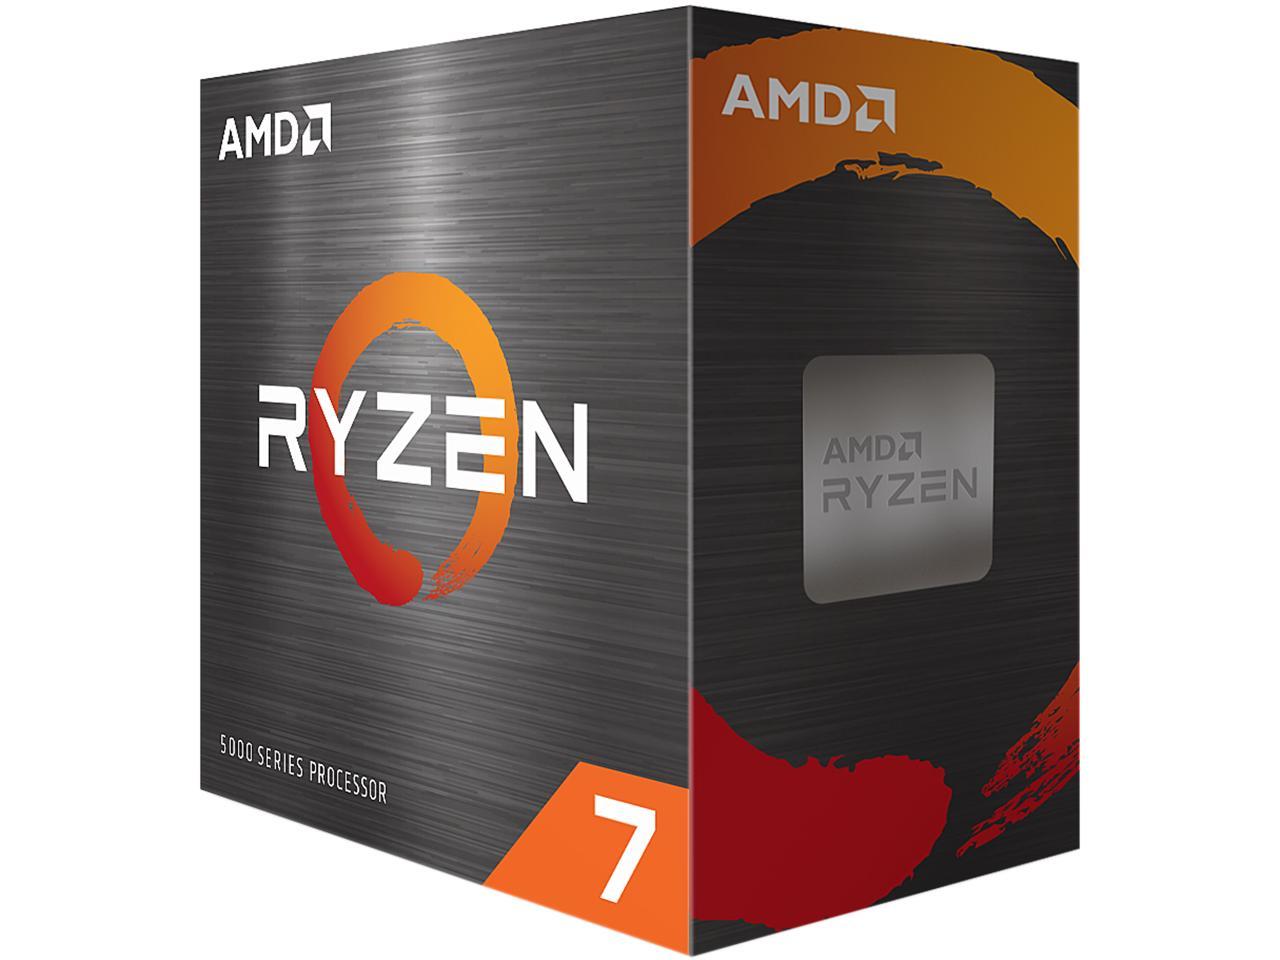 AMD Ryzen 7 5800X 3.8 GHz 8C/16T AM4 CPU + Free Shipping $207.49